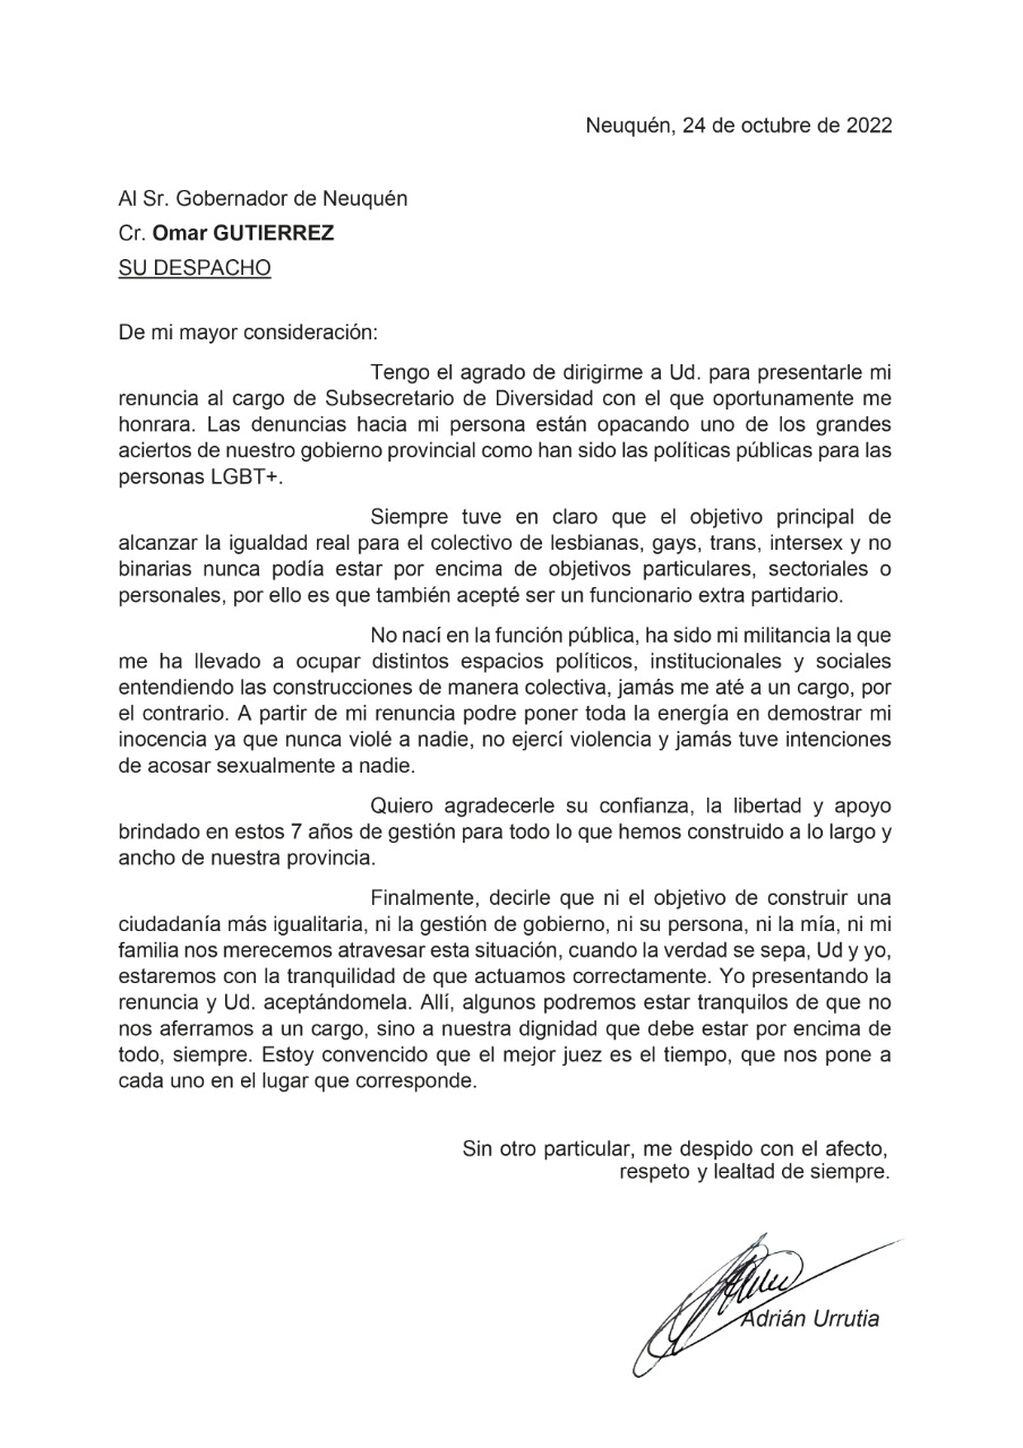 La renuncia de Adrián Urrutia.